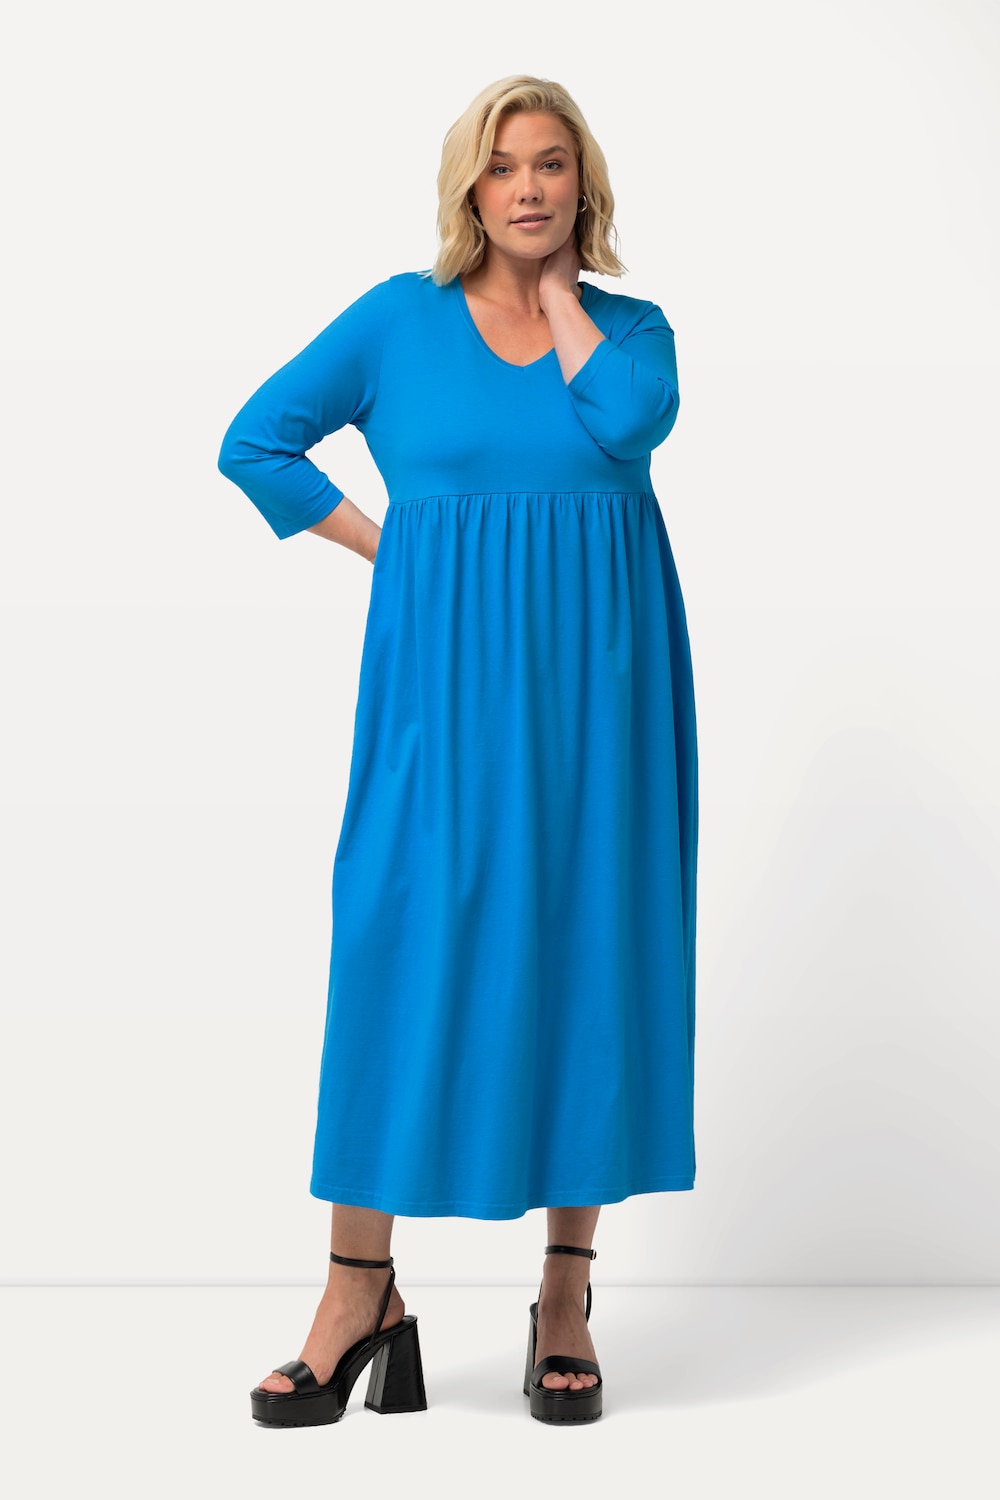 Grote Maten Jersey jurk, Dames, turquoise, Maat: 50/52, Katoen, Ulla Popken